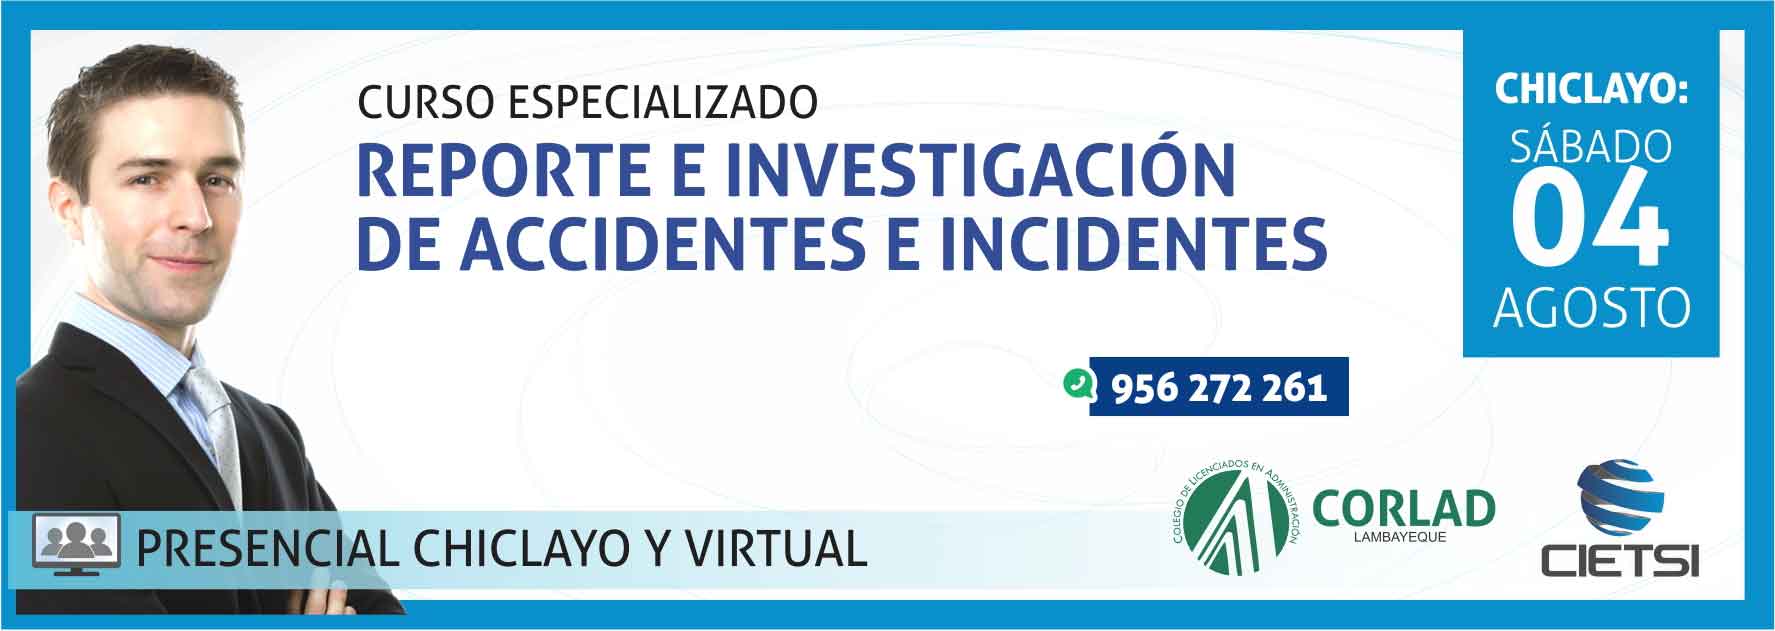 curso especializado reporte e investigaciOn de accidentes e incidentes 2018